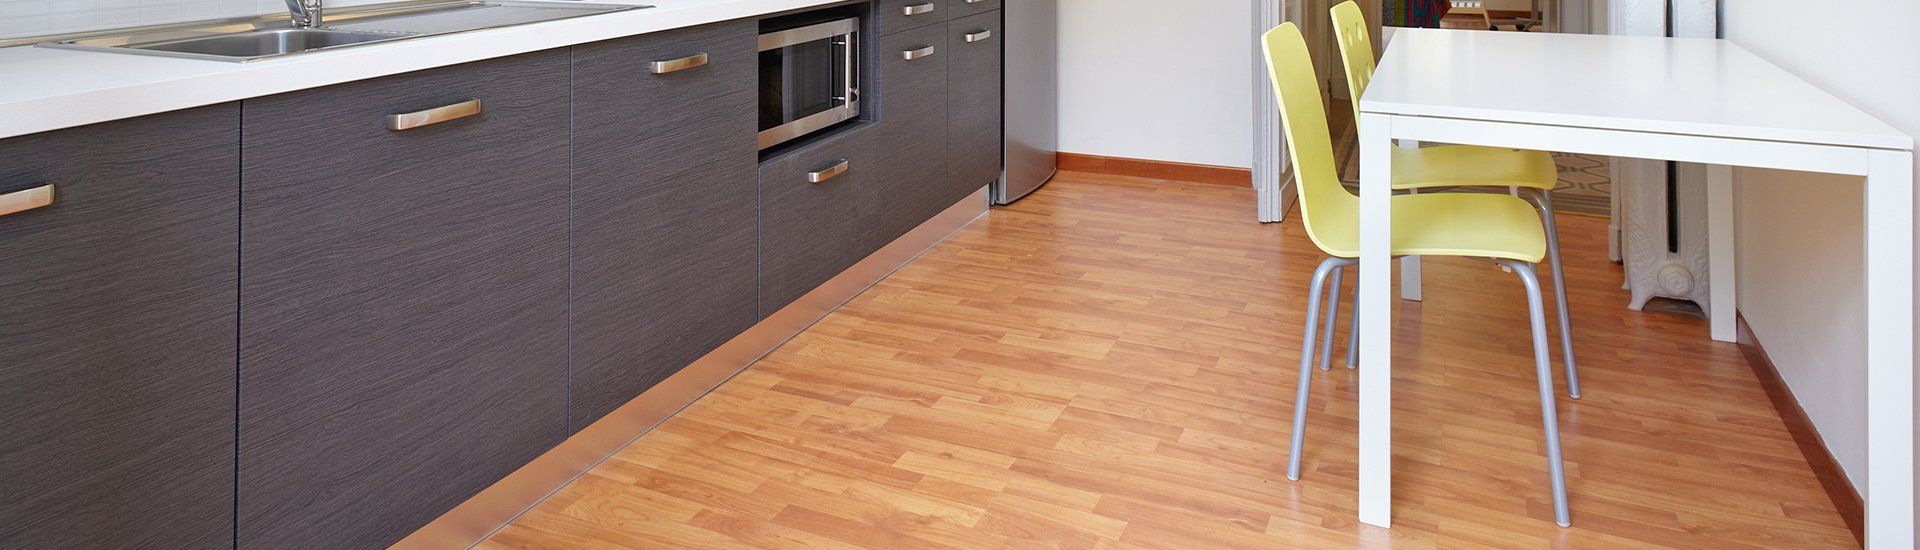 kitchen flooring 